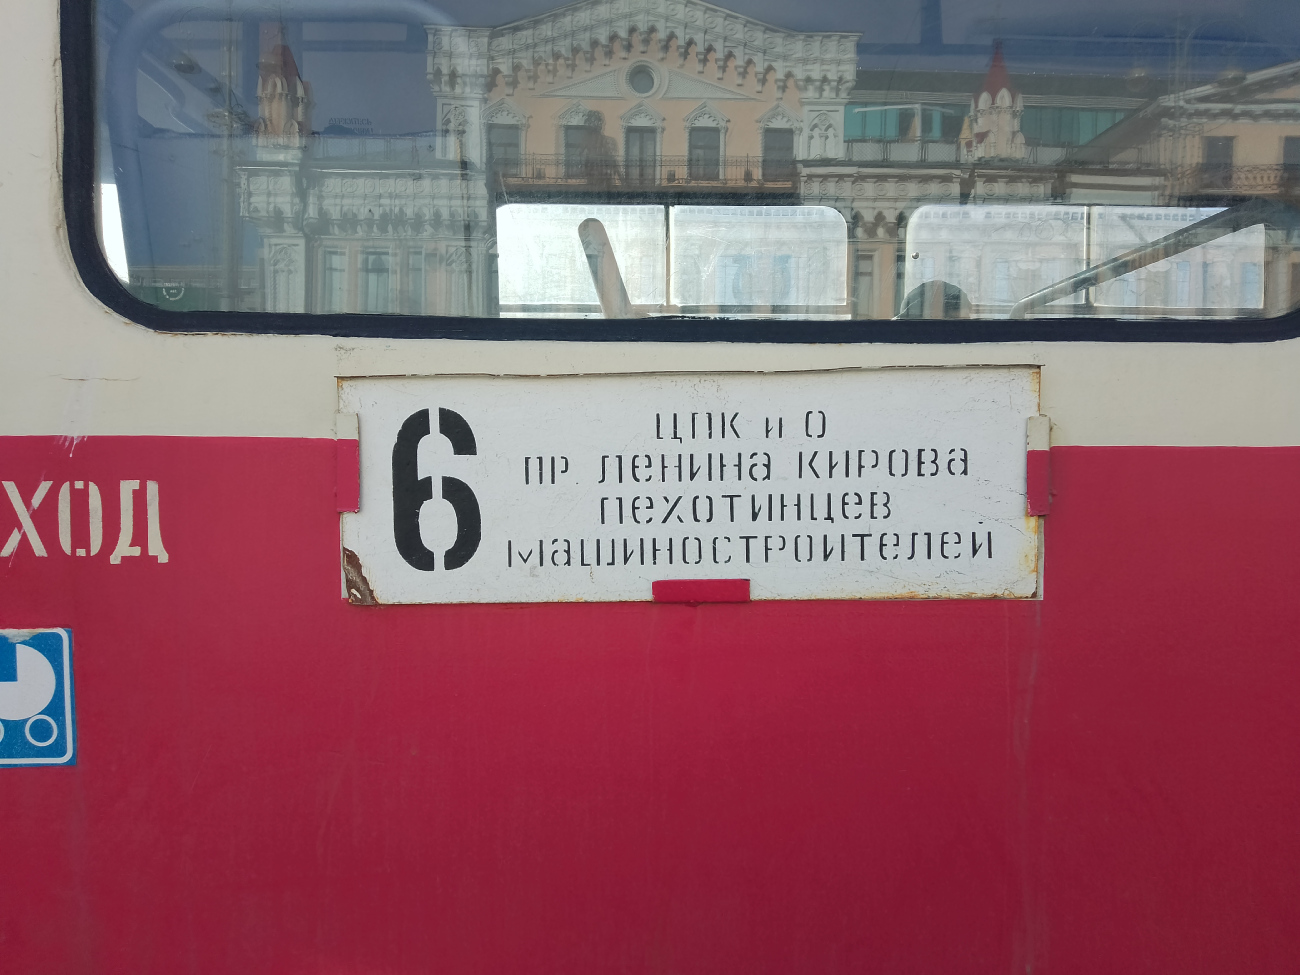 Екатеринбург — Остановочные и маршрутные трафареты